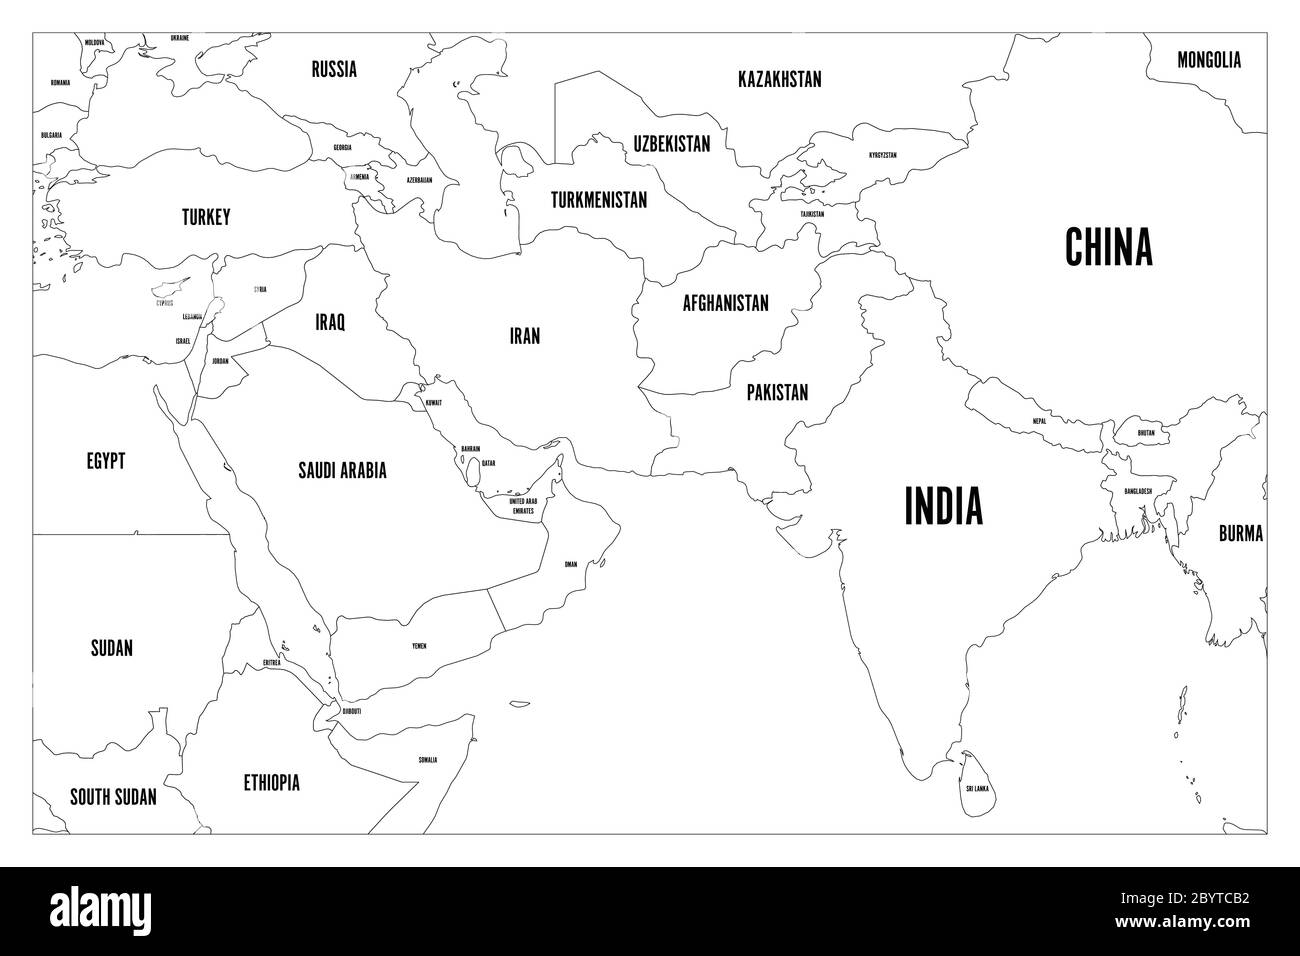 Mappa politica dei paesi dell'Asia meridionale e del Medio Oriente. Mappa vettoriale semplice e piatta con etichette per il nome del paese. Illustrazione Vettoriale